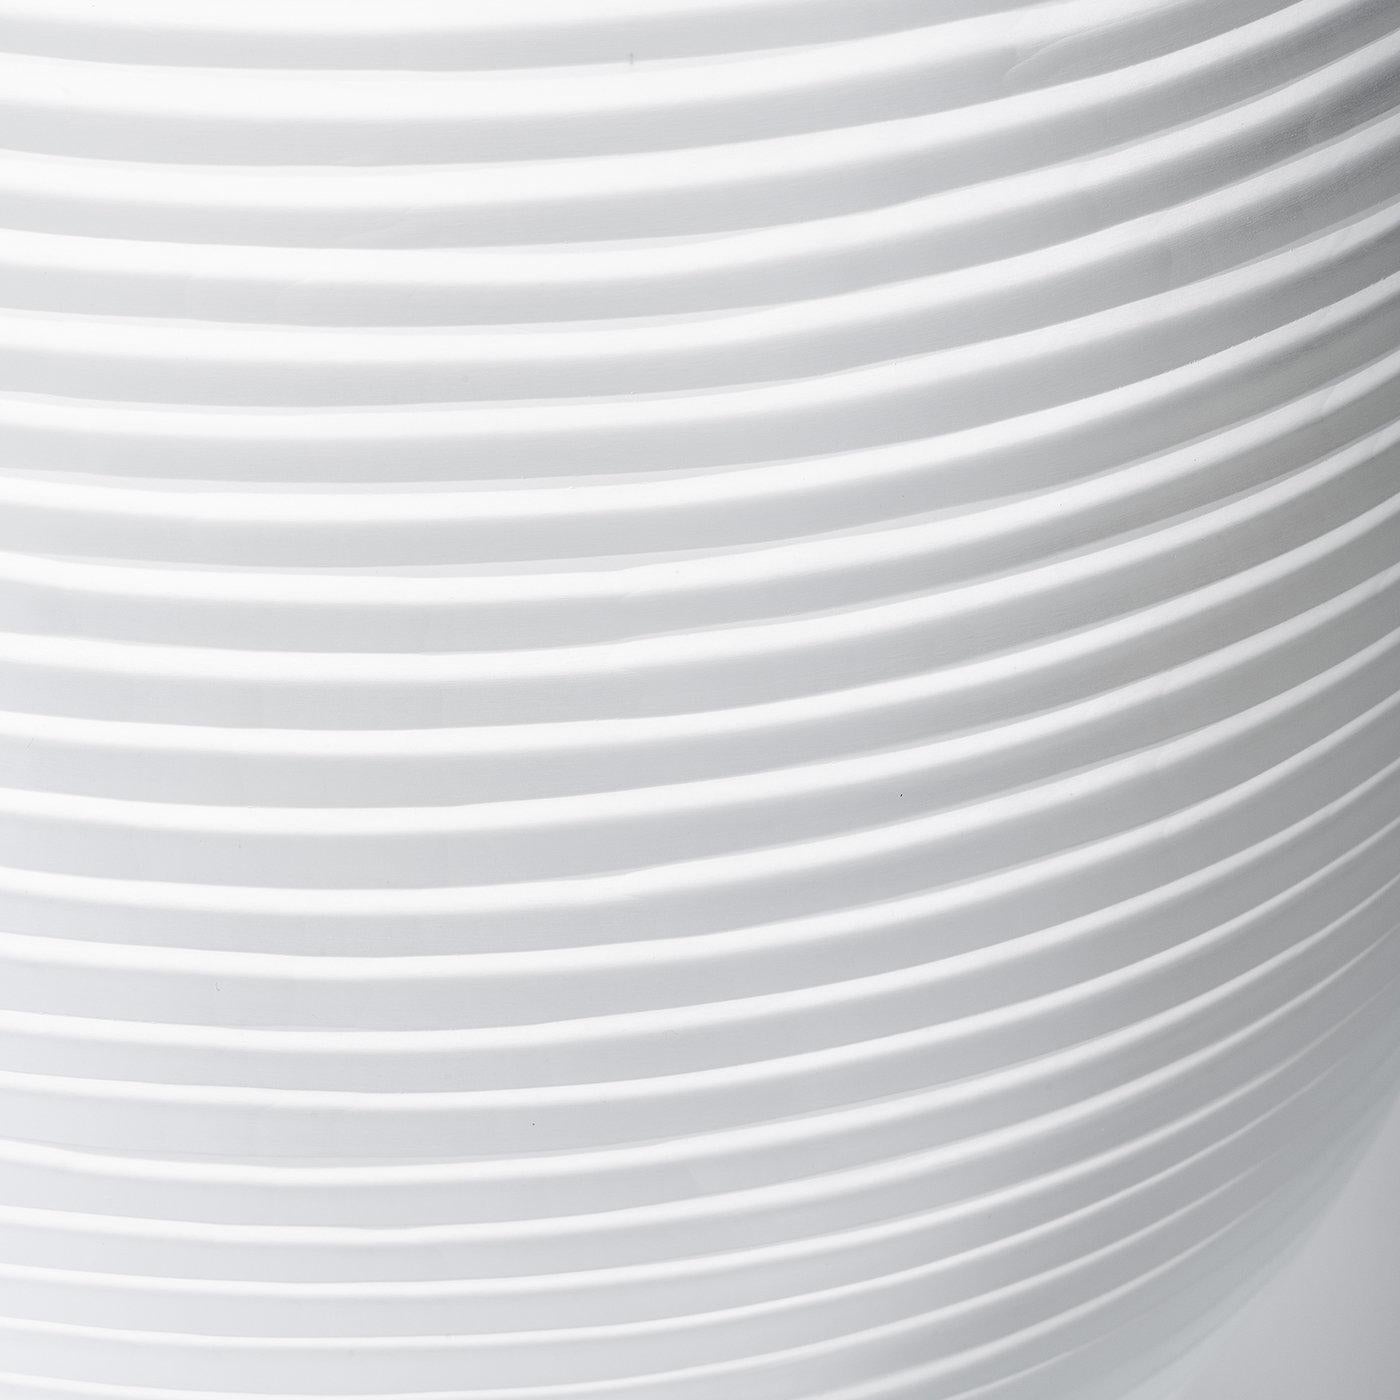 Les vases Linae sont une série de pots circulaires réalisés en verre épais soufflé de Murano dans un ton uni. Disponible en trois formes et motifs différents, le vase le plus haut, le Linae Large, présente des incisions horizontales créant un effet